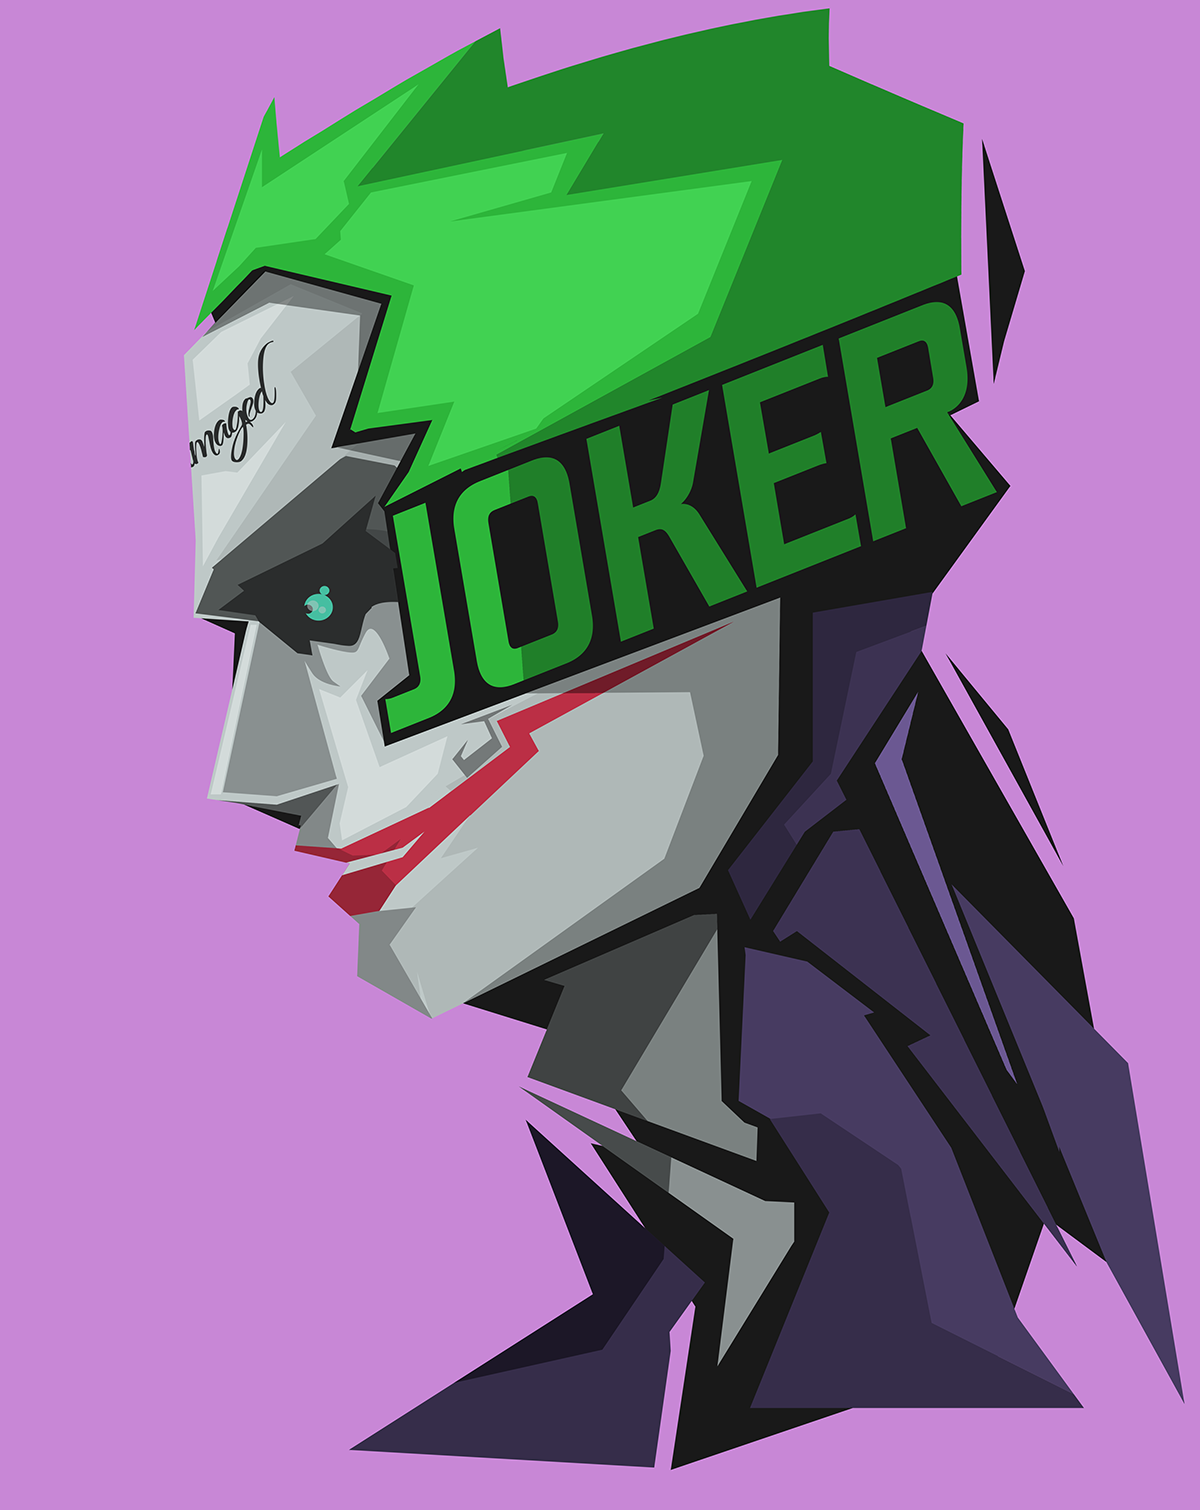 General 1200x1510 Bosslogic artwork Joker pink background Batman villains green hair profile comics DC Comics